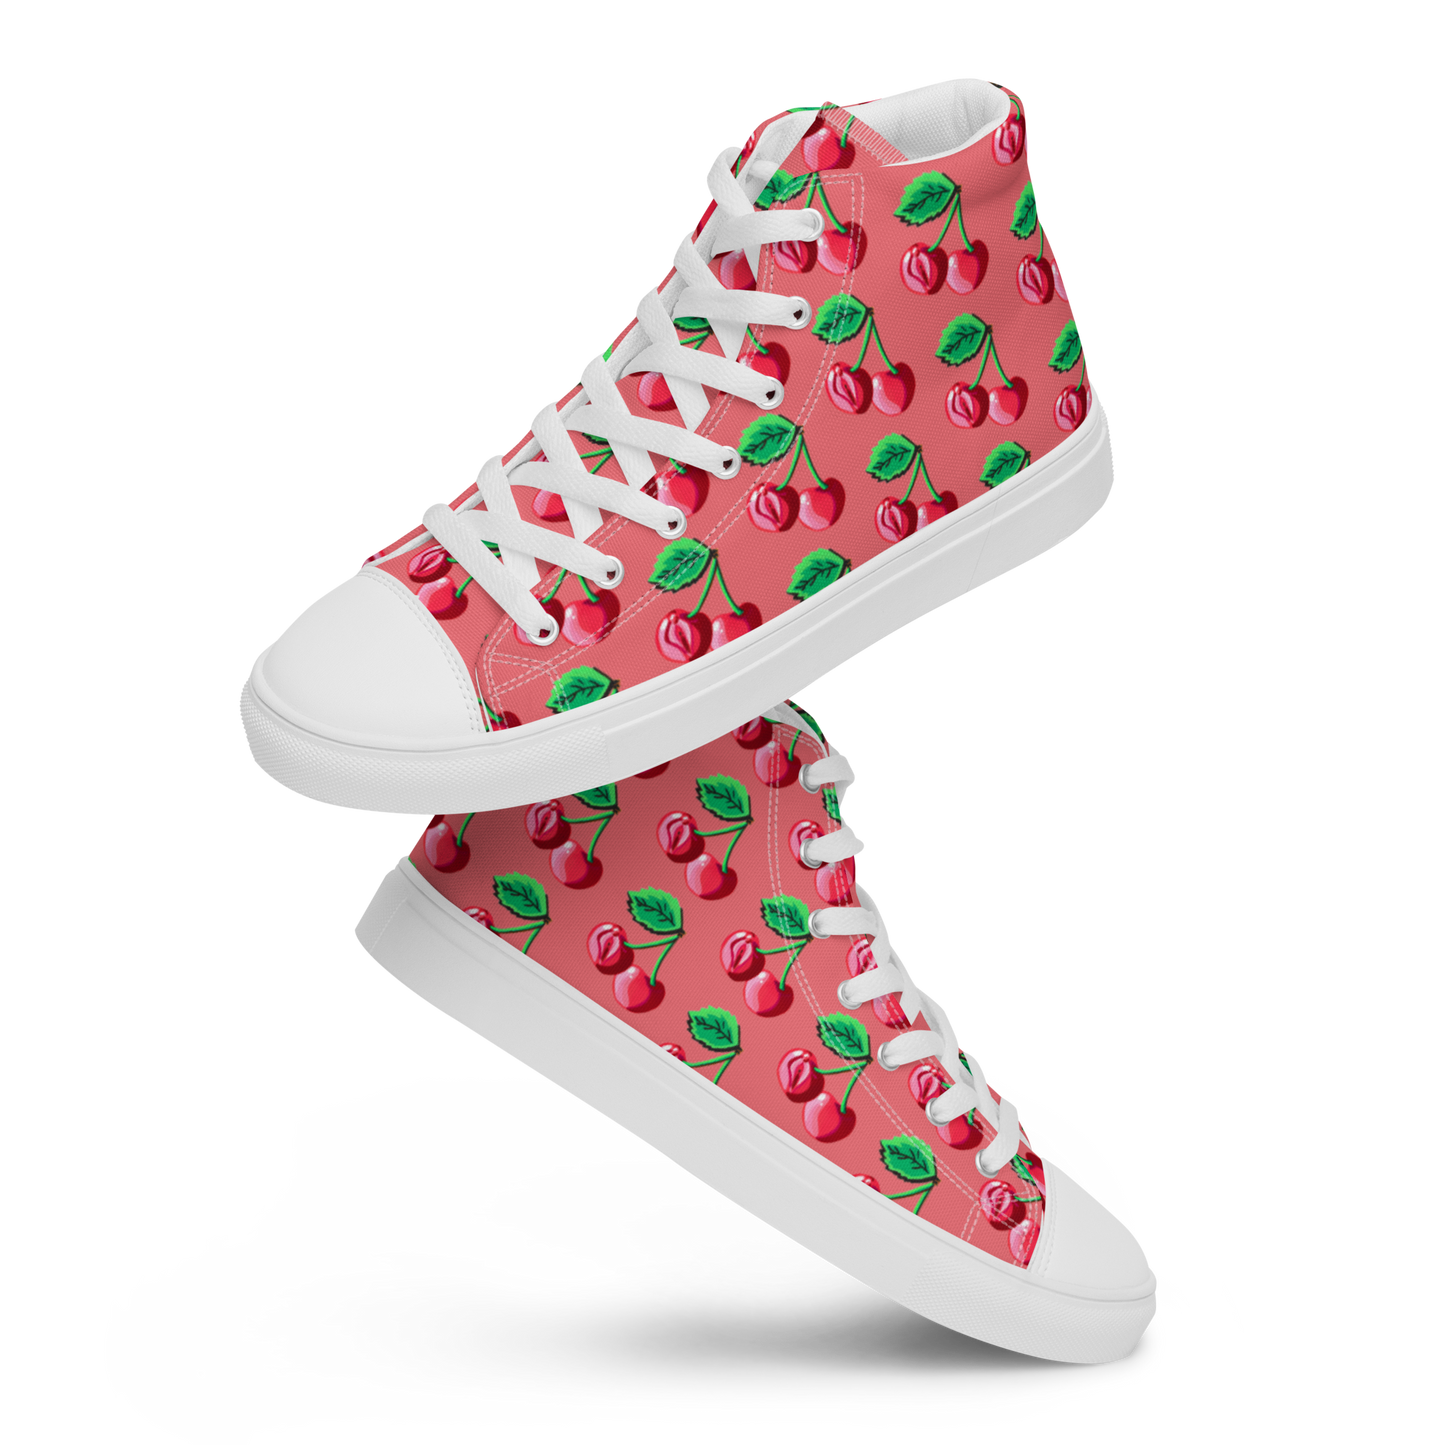 Cherry Vulva (pink)- Women’s high top canvas shoes